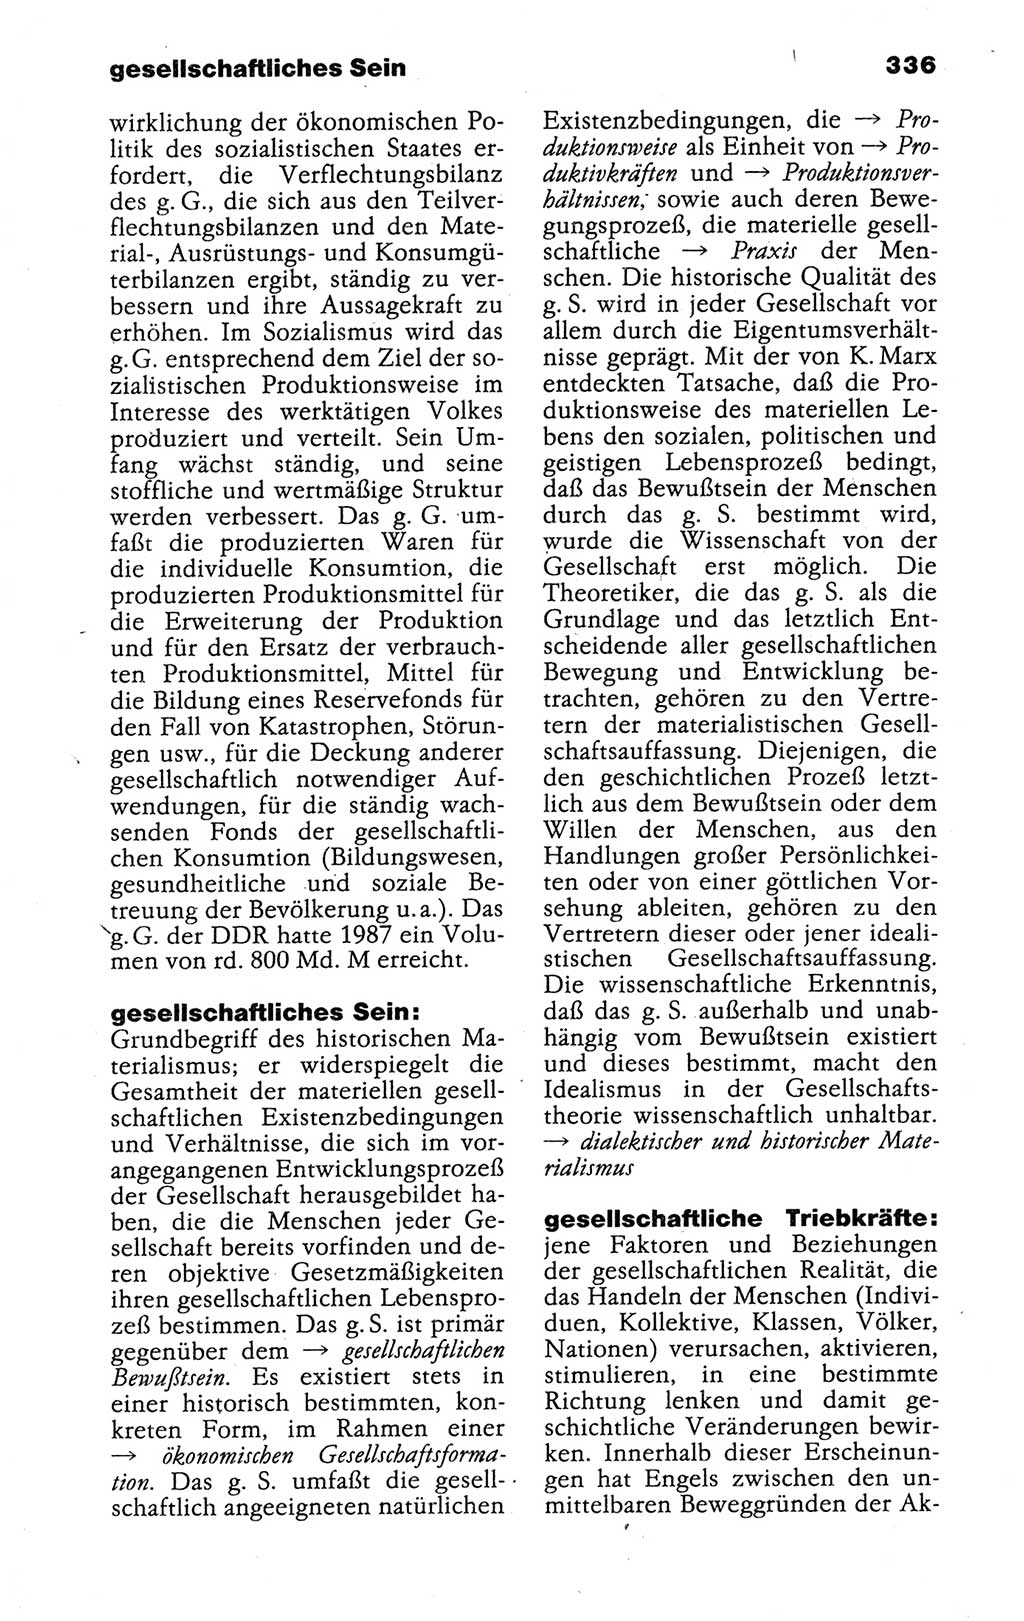 Kleines politisches Wörterbuch [Deutsche Demokratische Republik (DDR)] 1988, Seite 336 (Kl. pol. Wb. DDR 1988, S. 336)